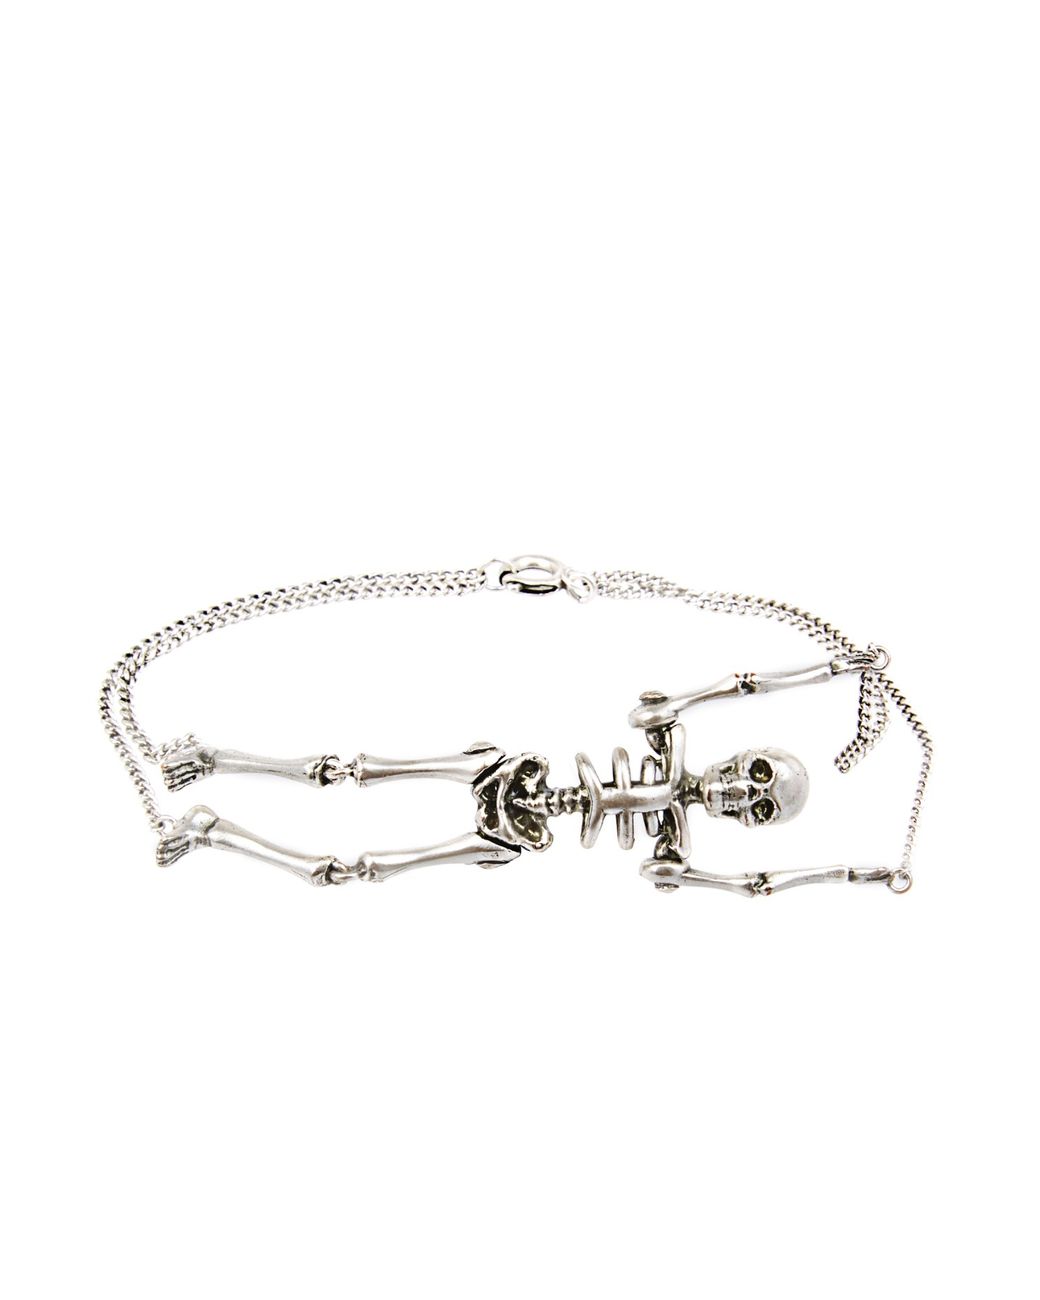 Skeleton Hand Bracelet | Skeleton hand bracelet, Hand bracelet, Skeleton  bracelet